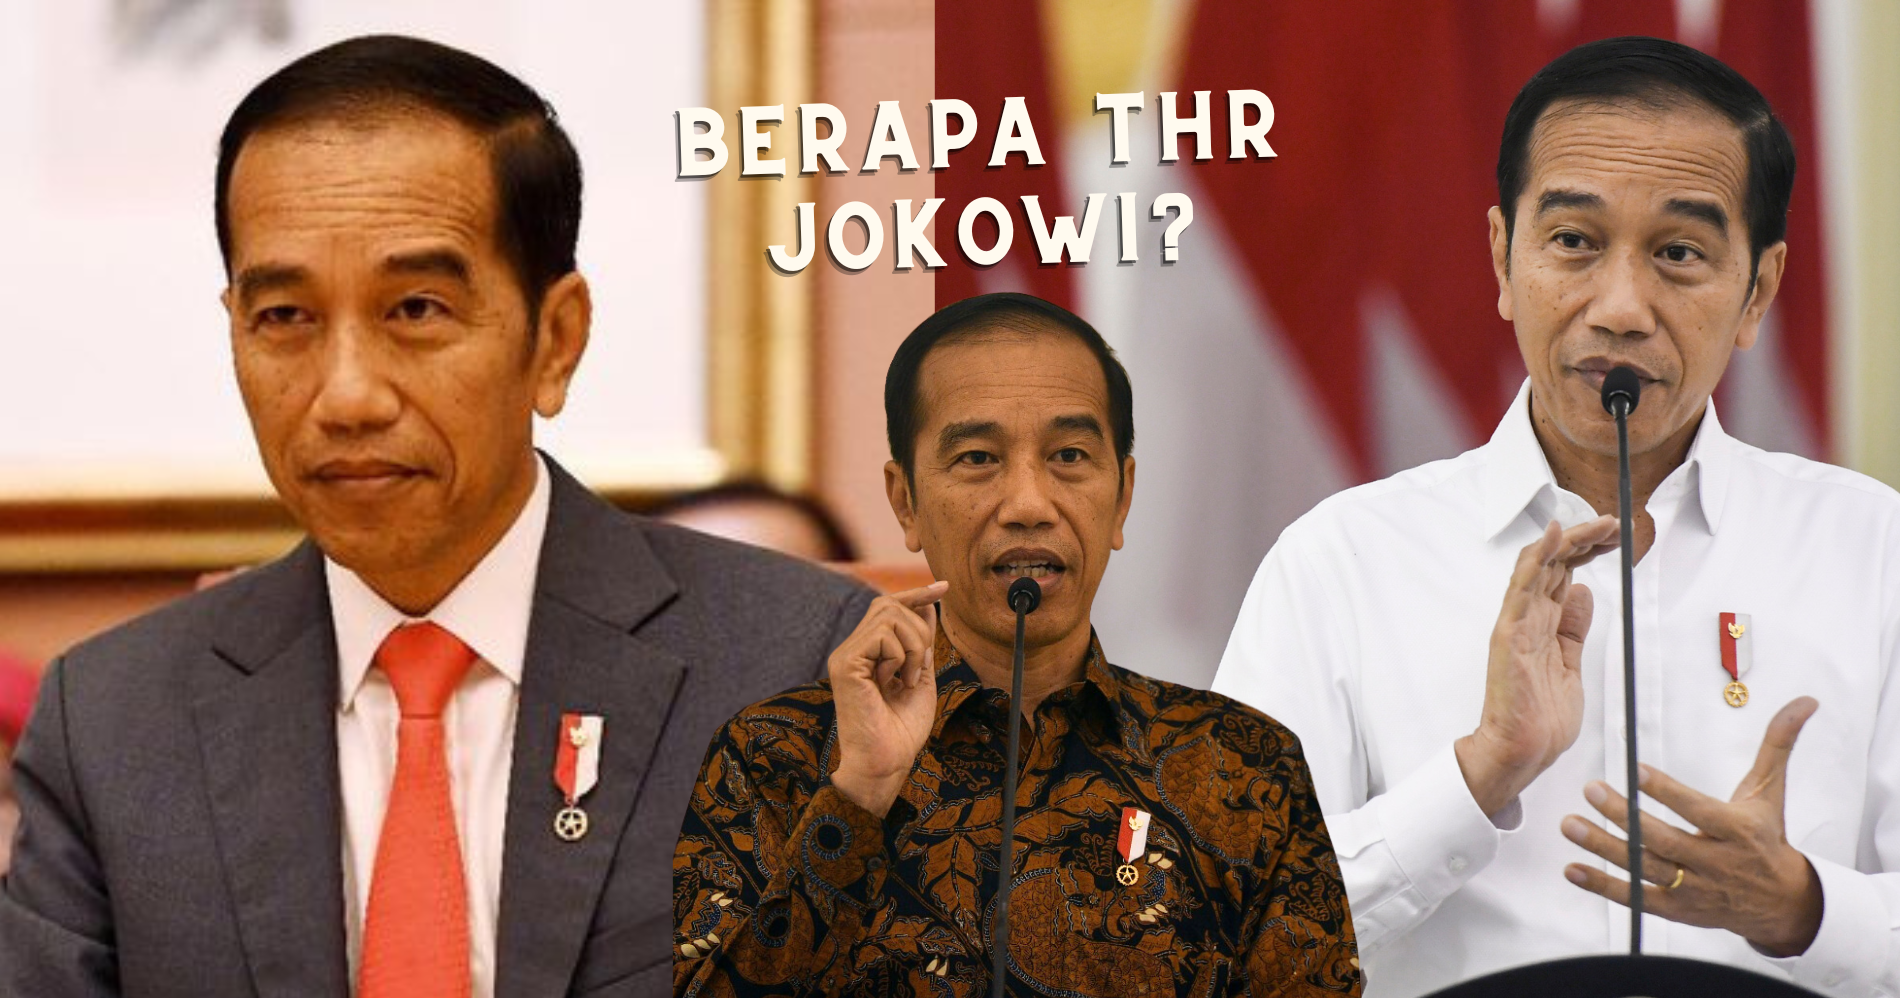 Berapakah THR Jokowi?